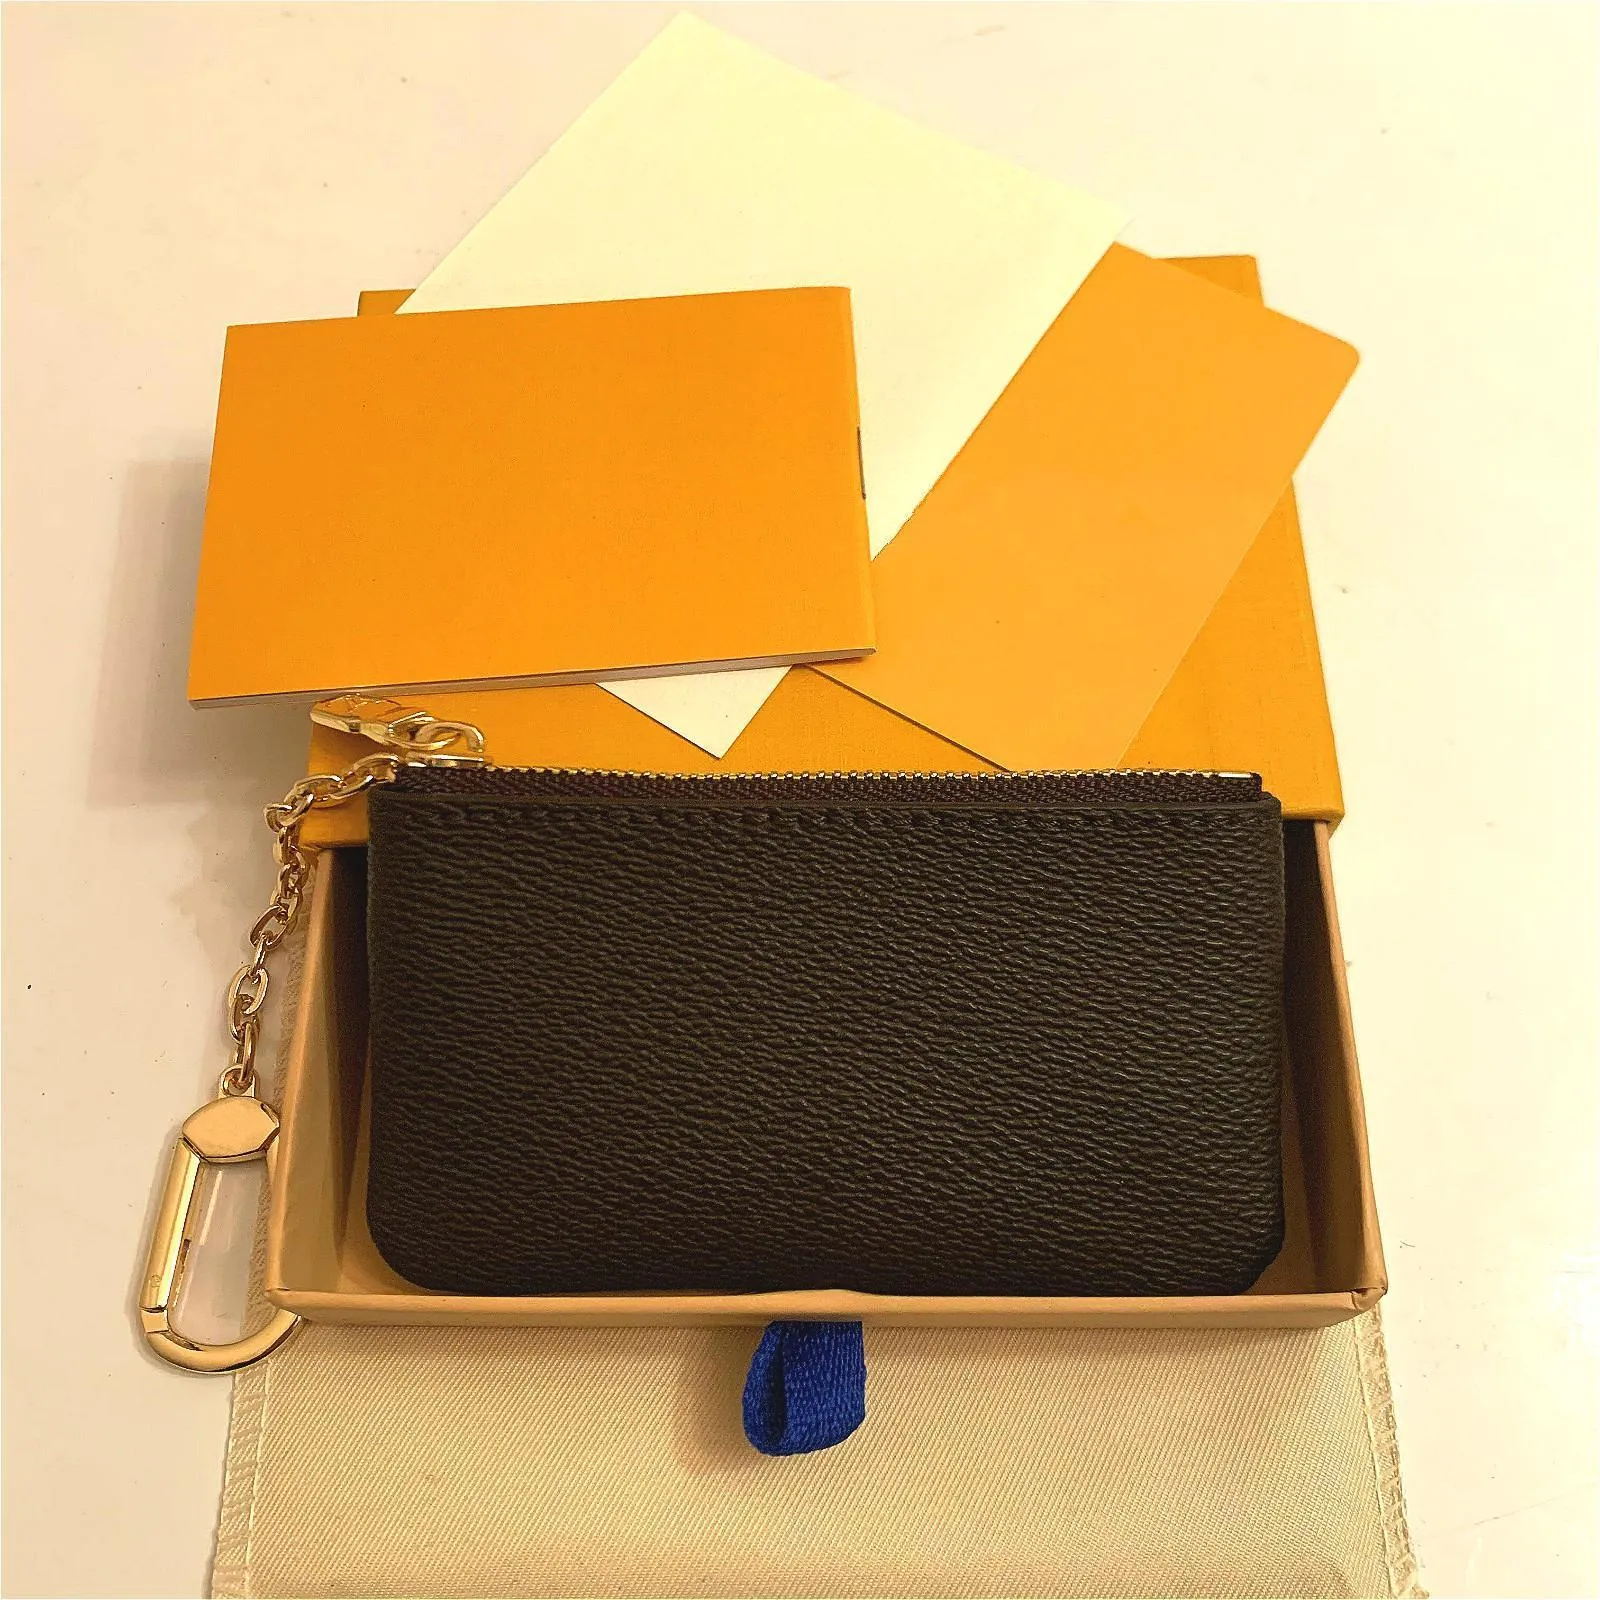 حامل بطاقة المرأة الصغيرة Zippy محفظة مفتاح العملة بني زهرة M62650 كوك مفتاح سلسلة جلدية أصلية الفاخرة المصمم عملة المحفظة المحفظة.